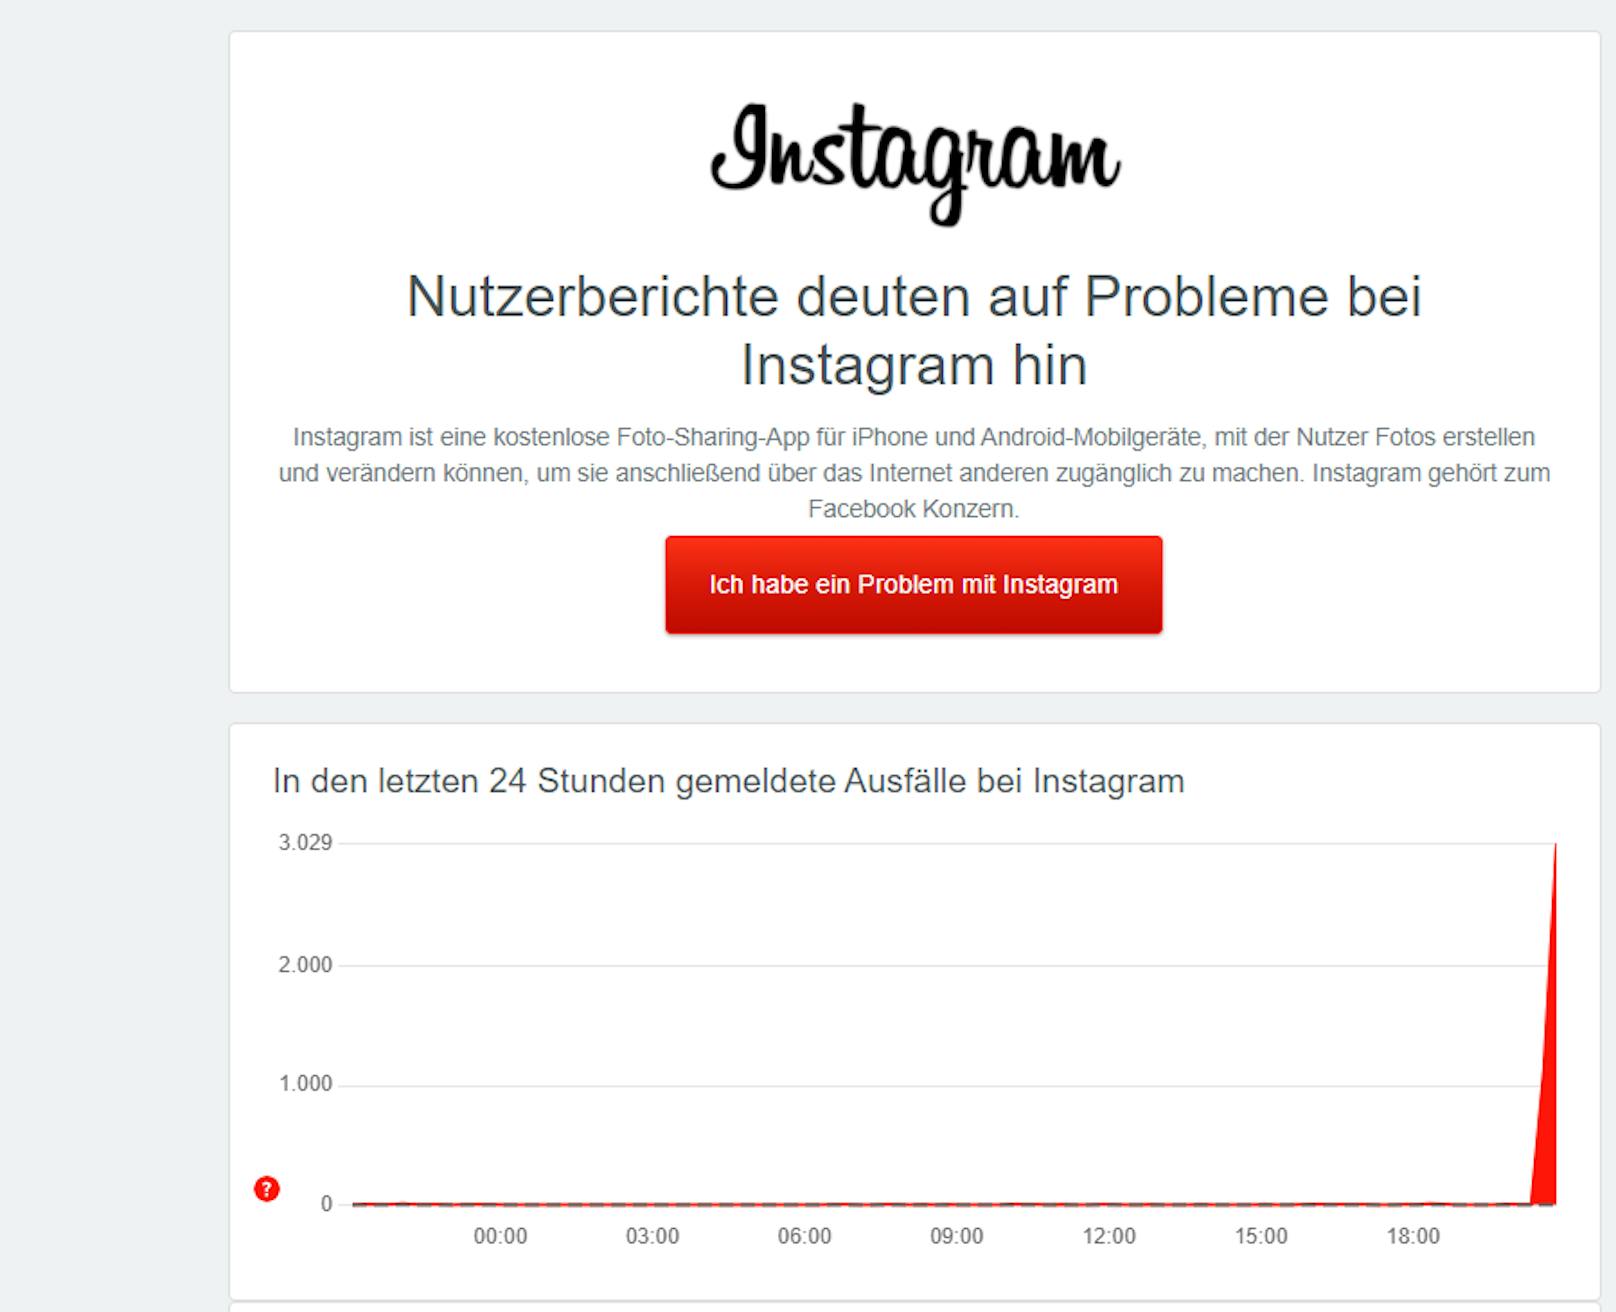 Nutzerberichte deuten auf Probleme bei Instagram hin